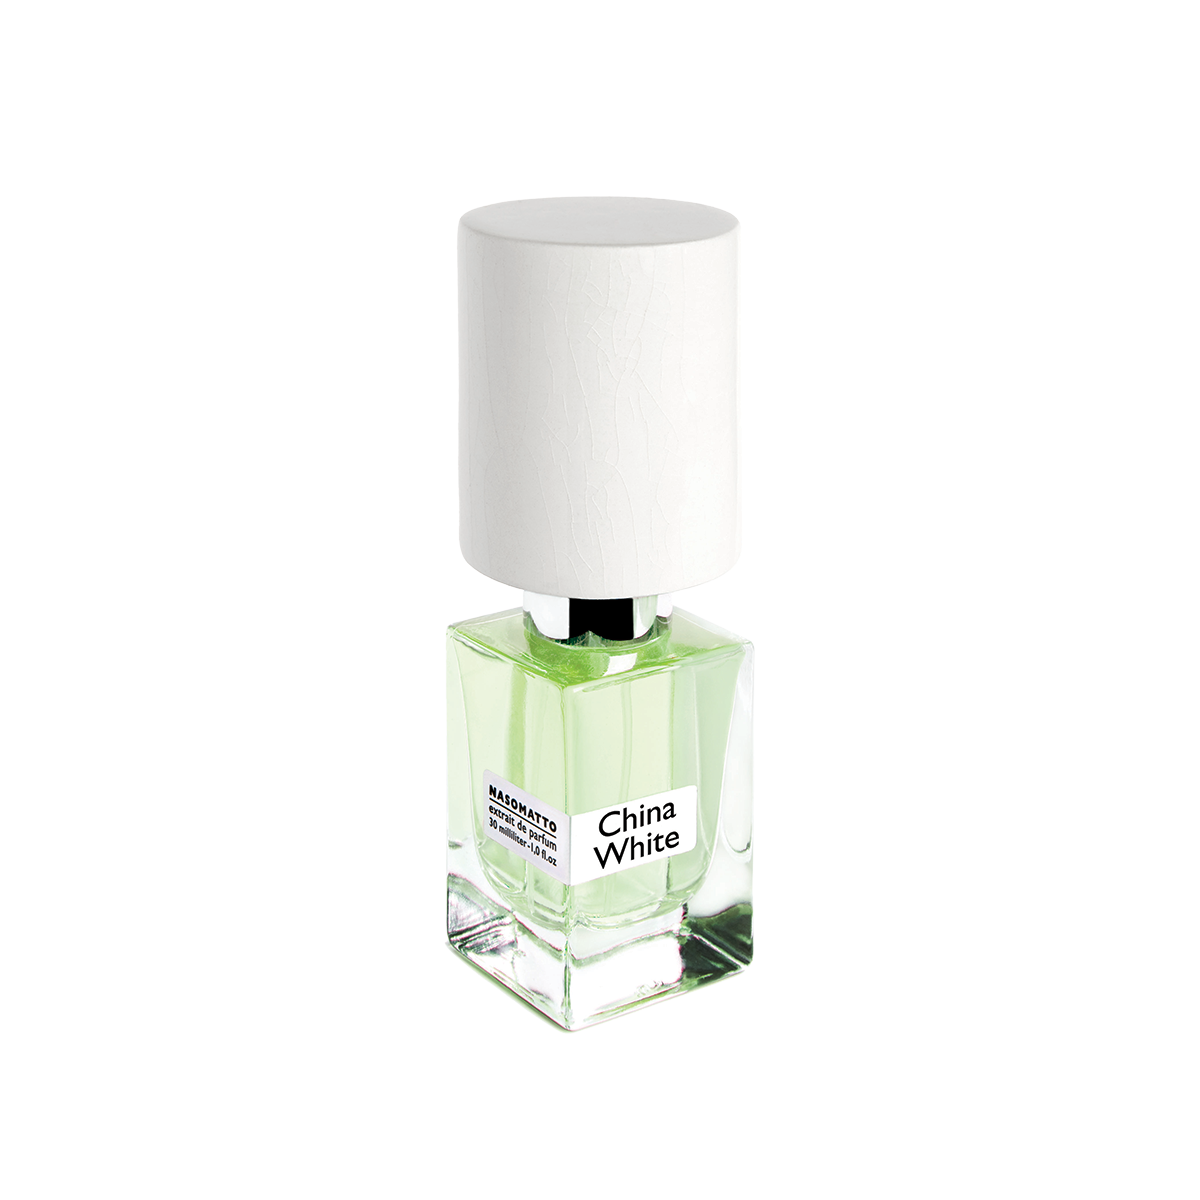 China White <br> Extrait de Parfum 30ml